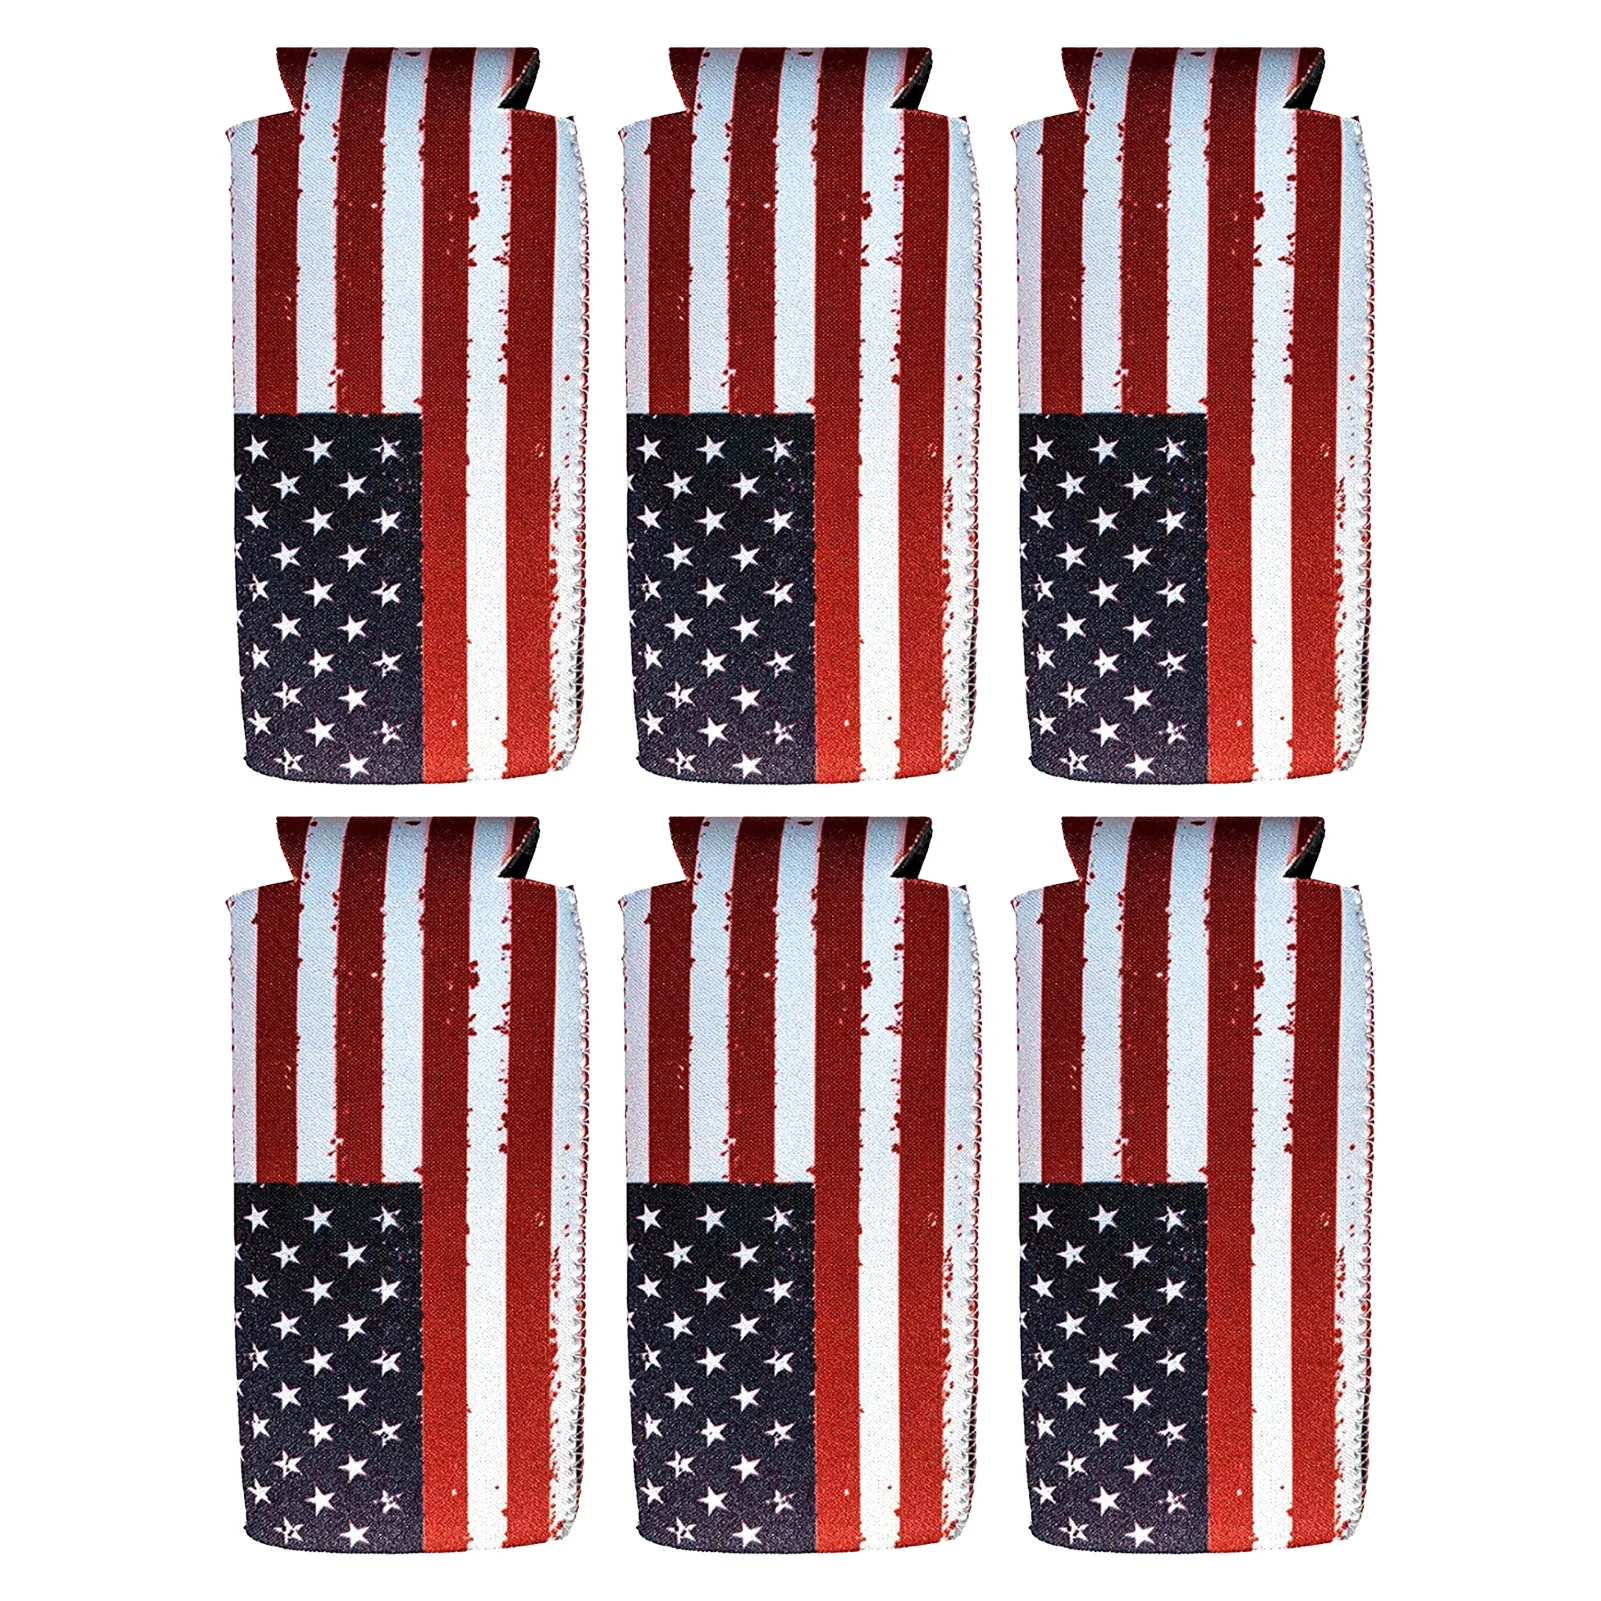 

Обтягивающие рукава для консервных банок на День независимости патриотические тонкие рукава для пивных банок 12 унций 6 шт. 4 июля рукава для ...